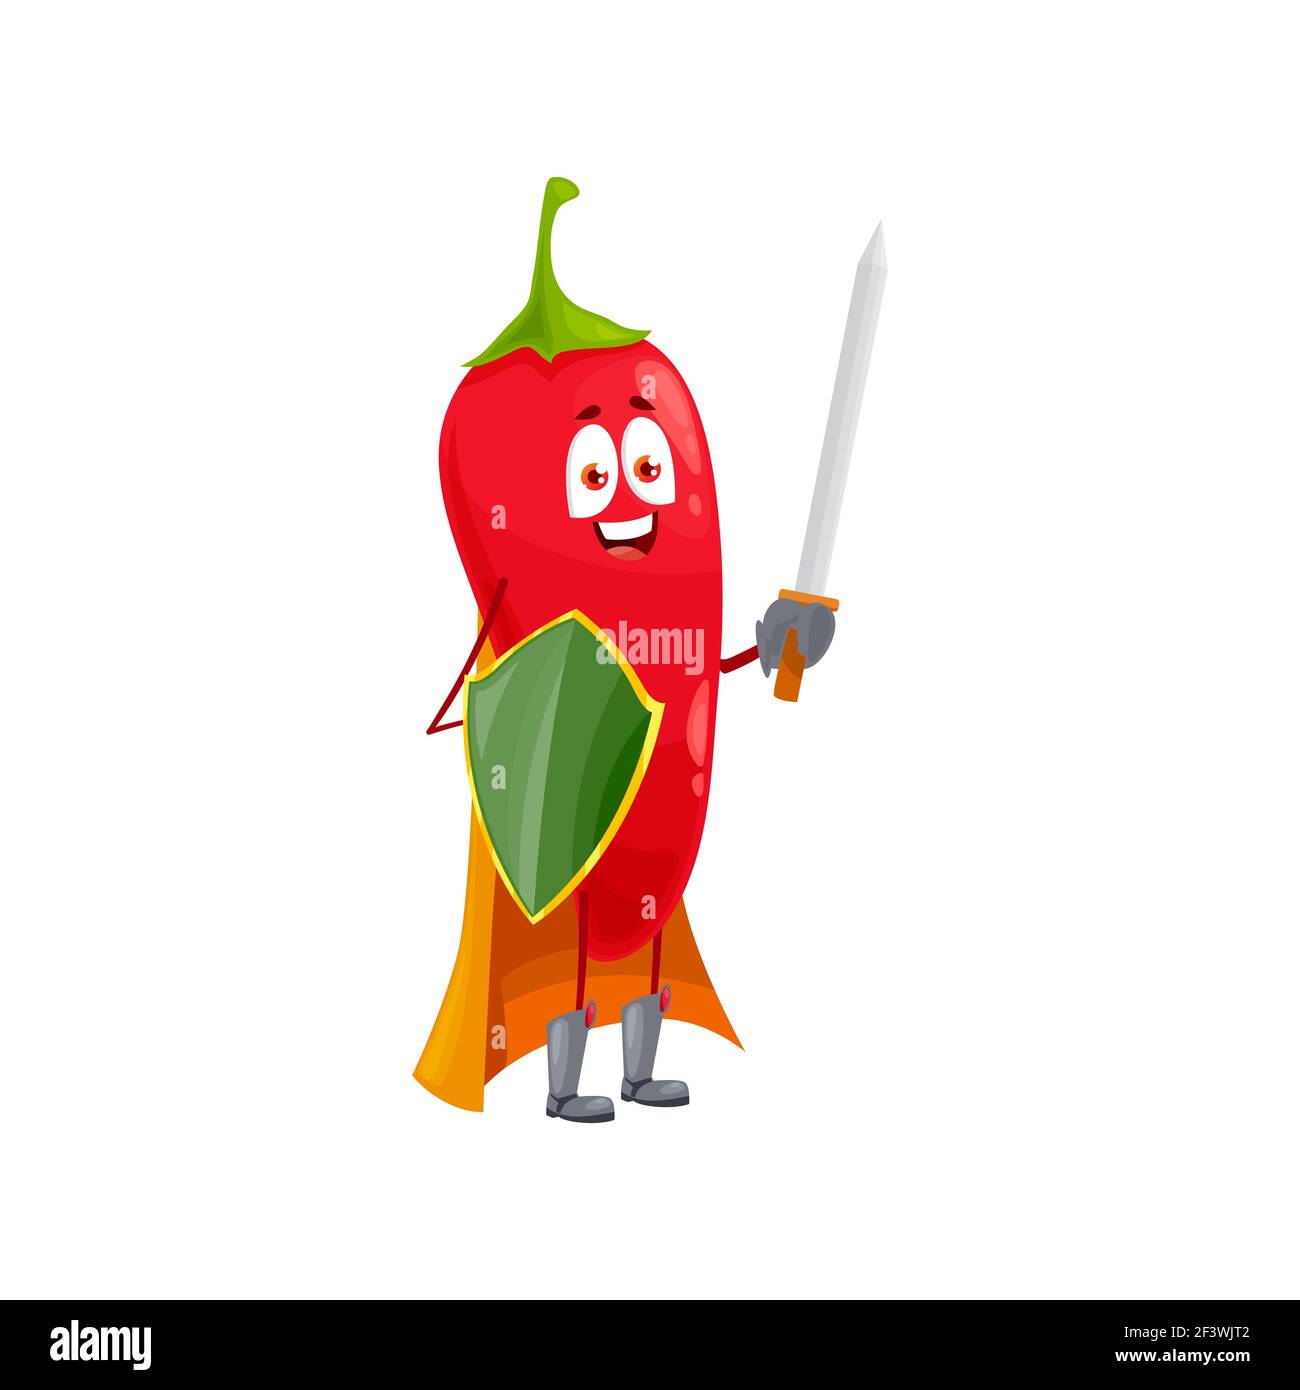 Cartoon Chili Pfeffer super Held isoliert Vektor-Symbol lustig Gemüse, Märchen Ritter Charakter im Mantel, mit Schild und Schwert. Gesunde Ernährung, superh Stock Vektor